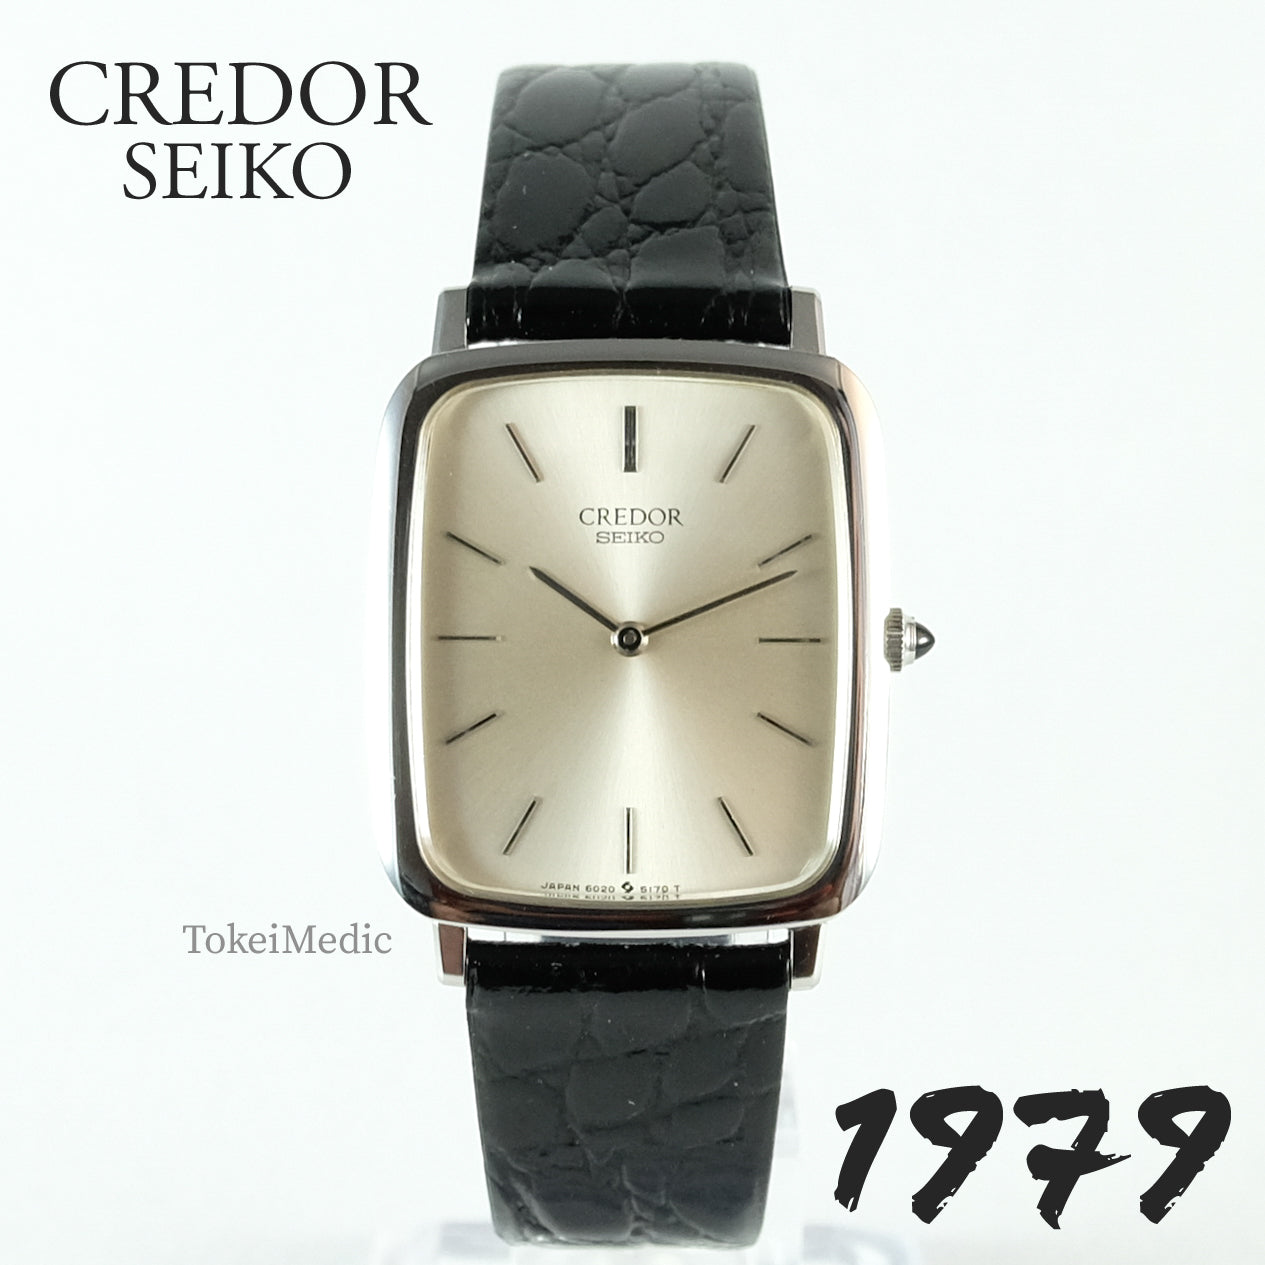 1979 Credor Seiko 6020-5170